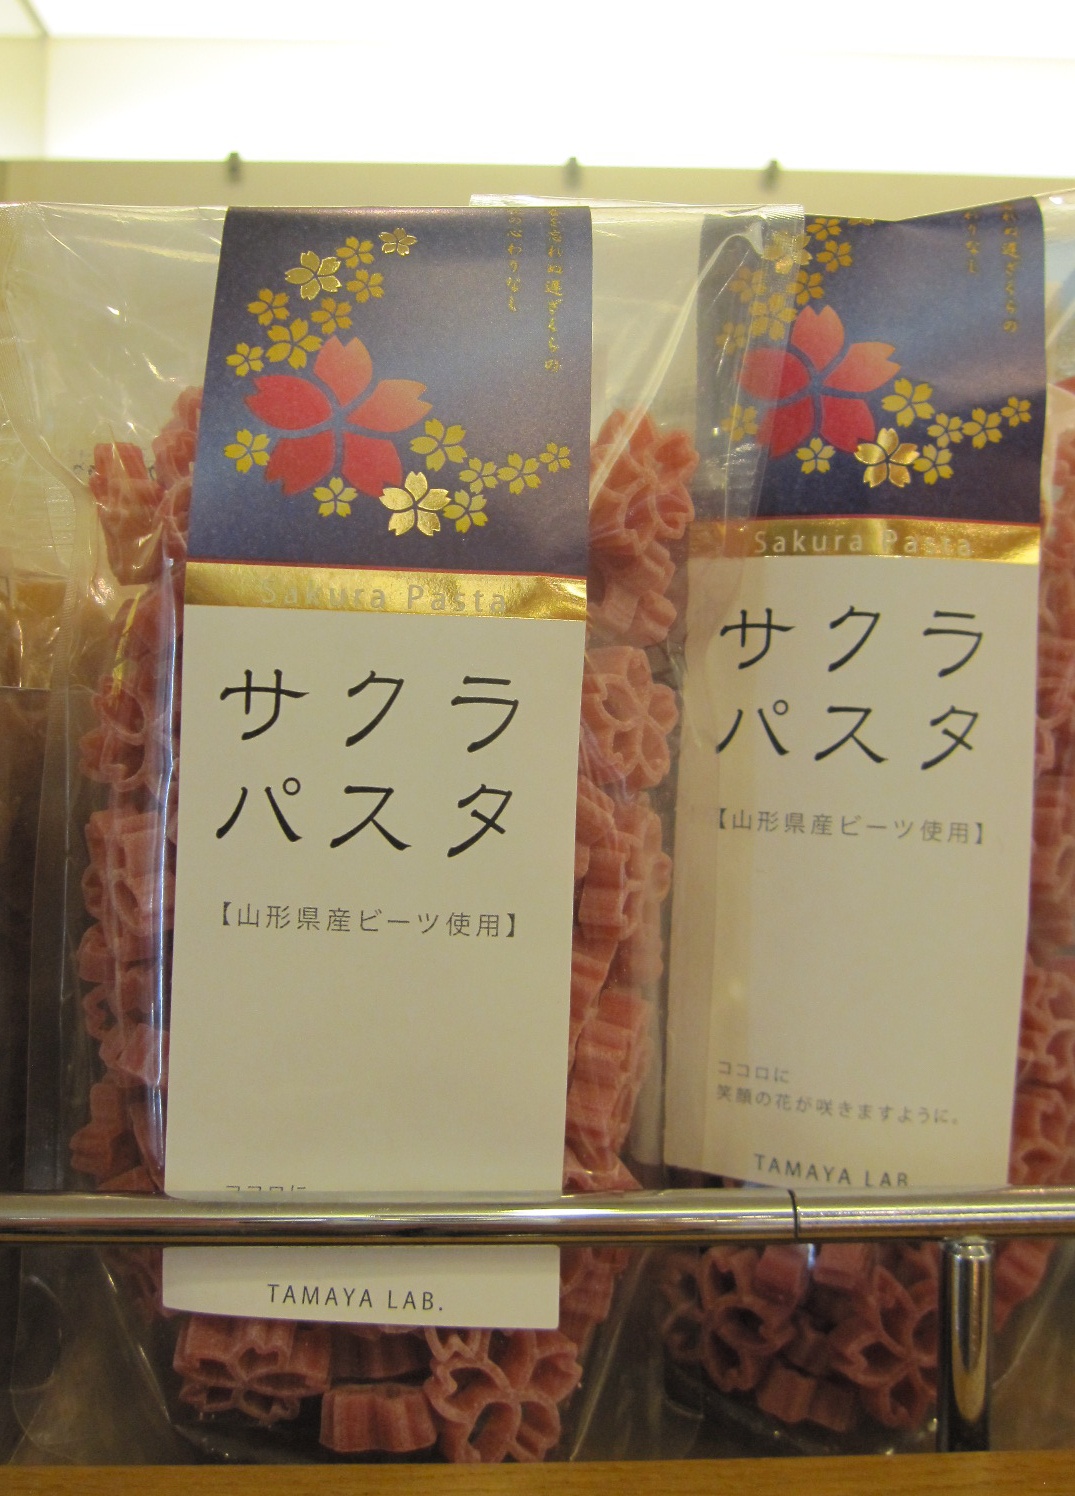 3. Sakura Pasta